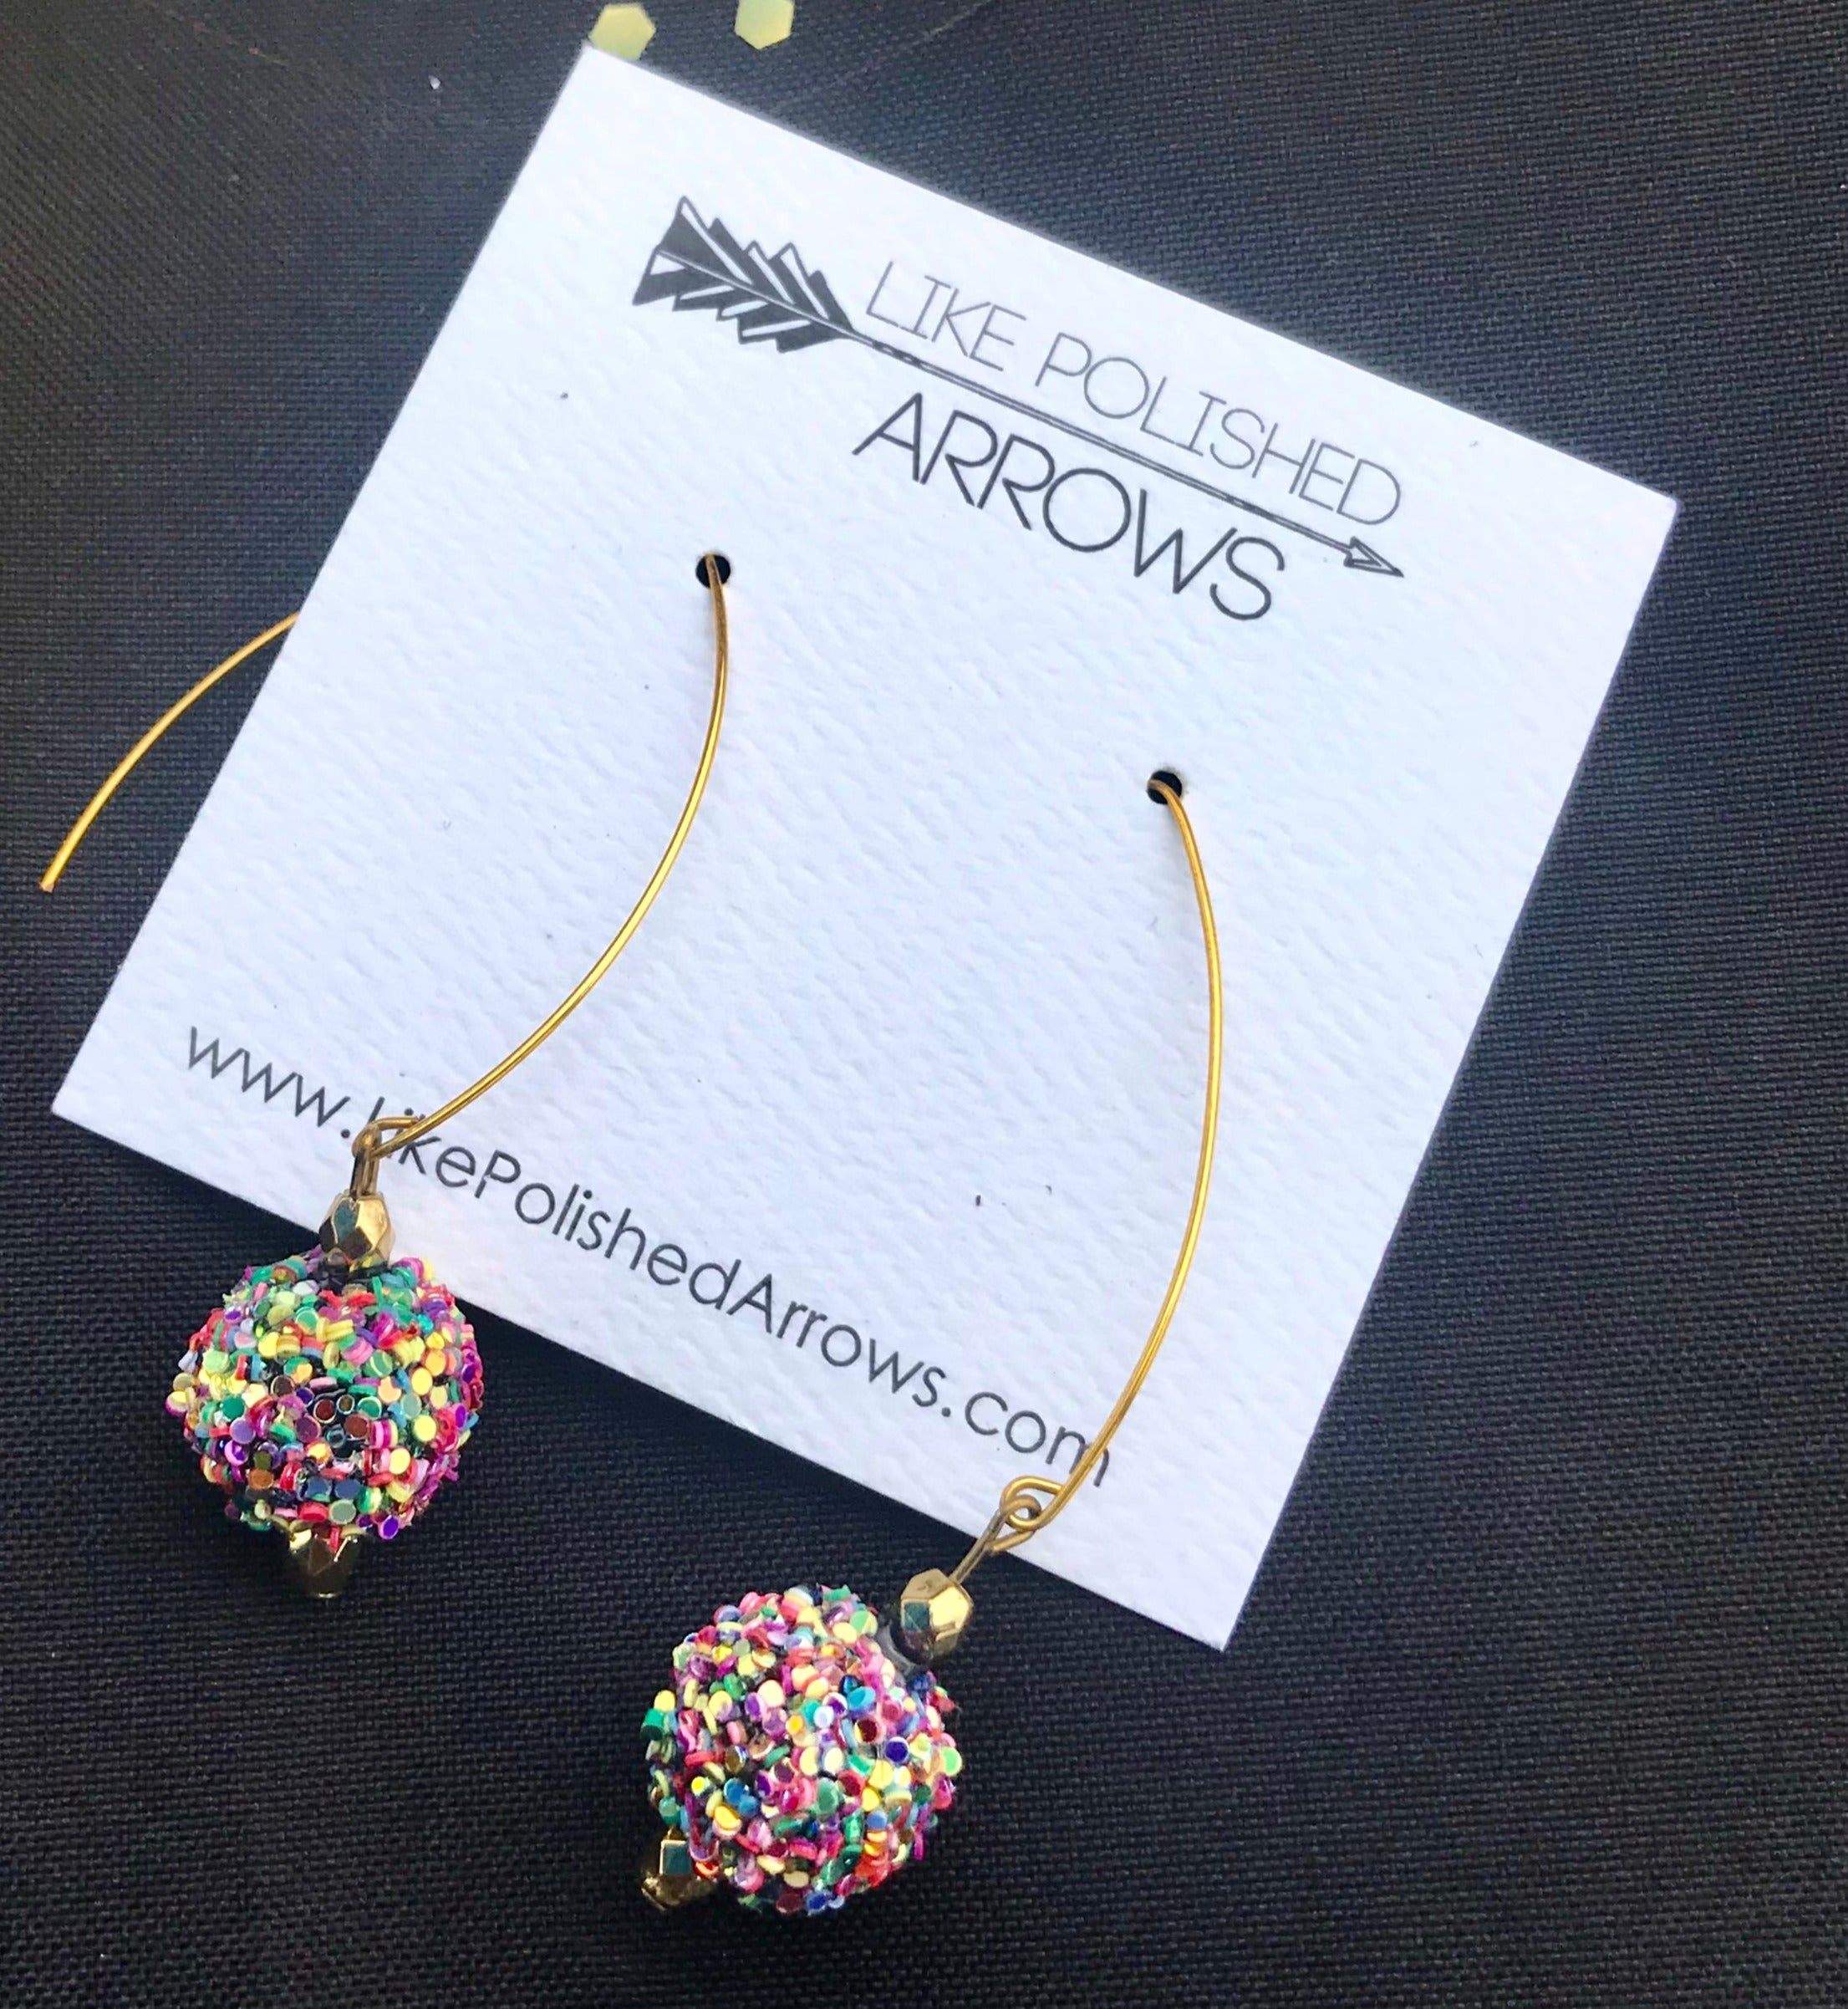 Glitter Balls Multicolor Dangle Earrings